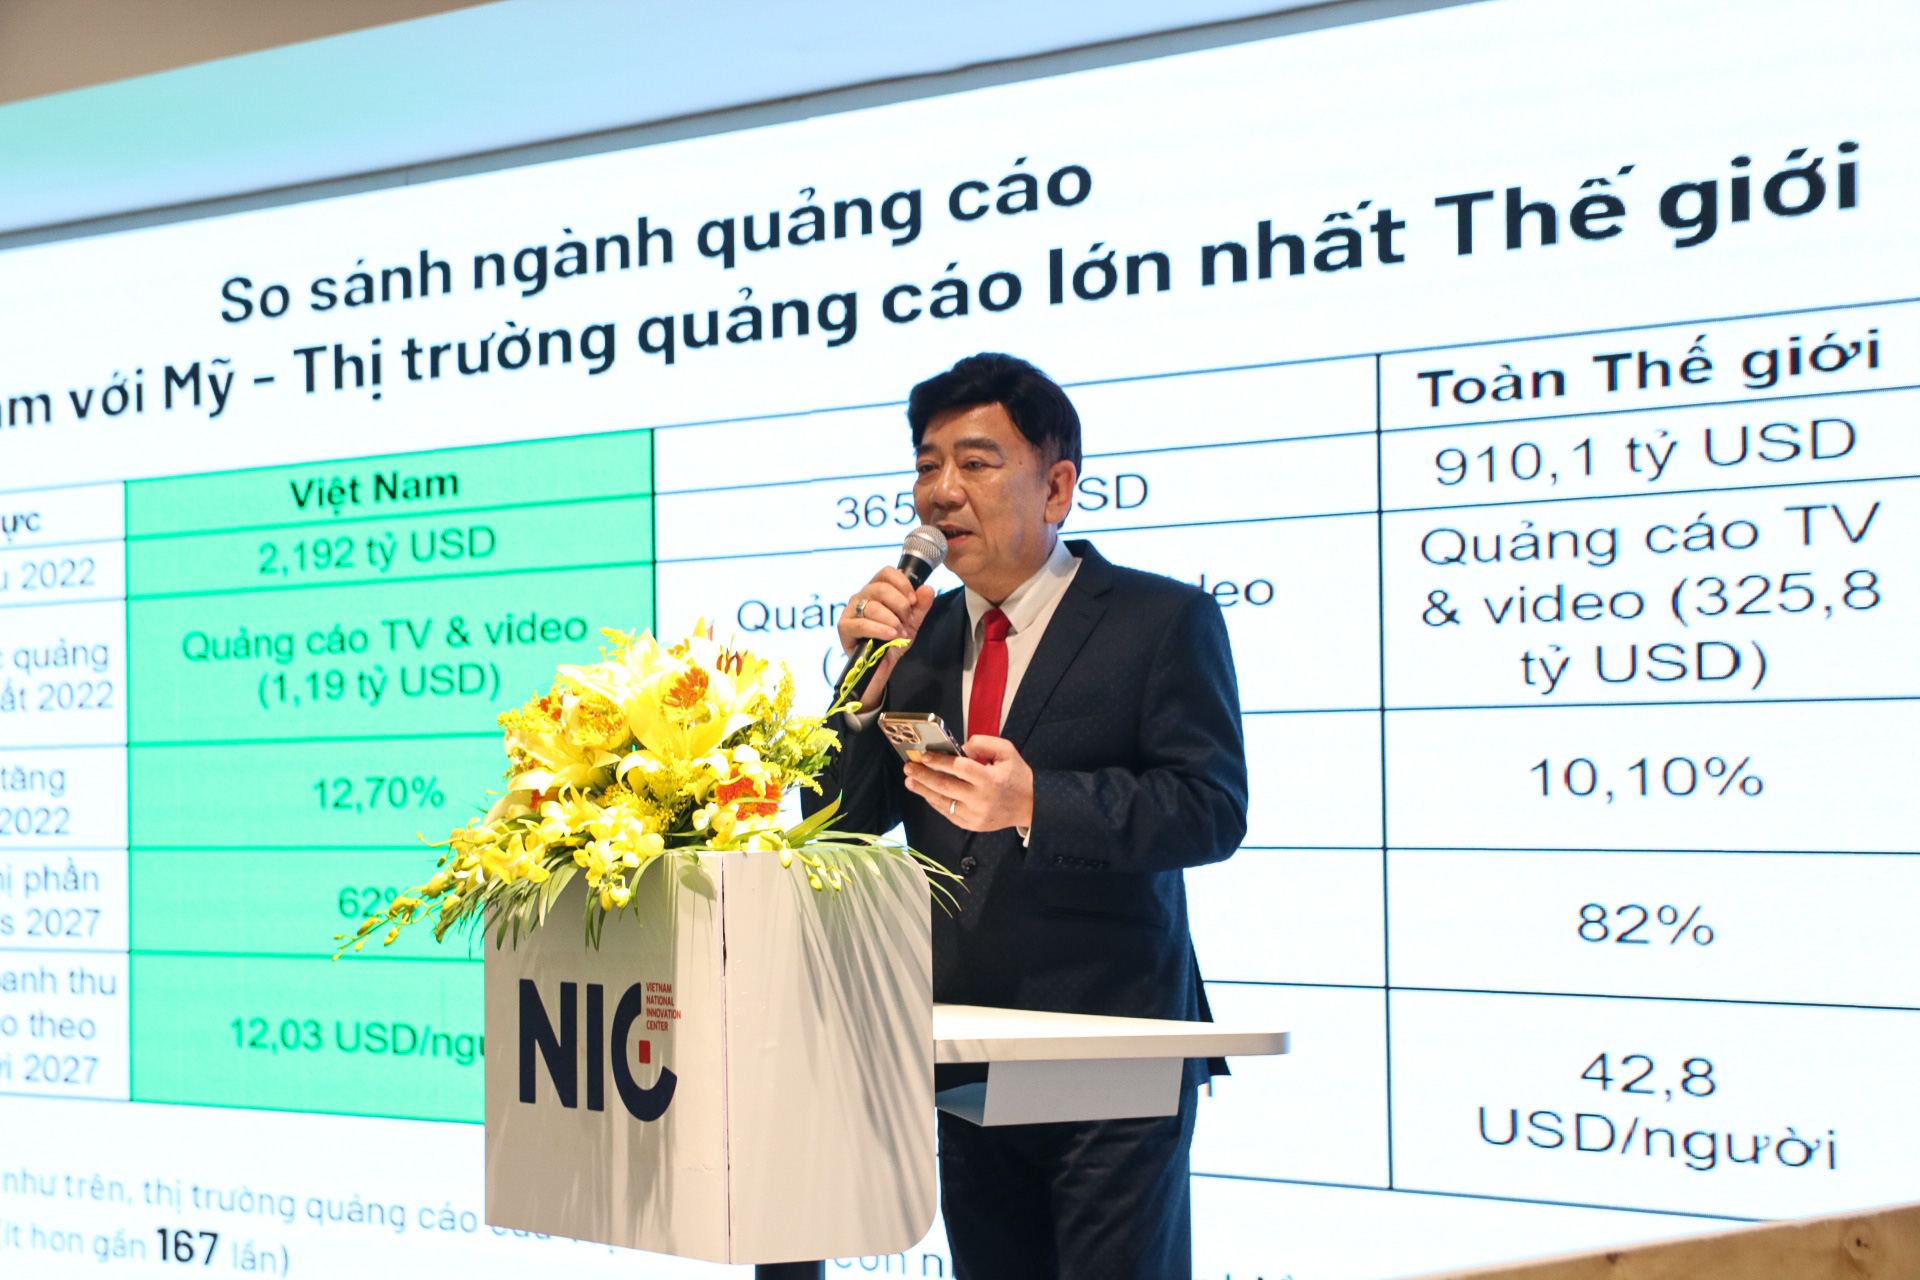 Ông Nguyễn Trường Sơn, Chủ tịch Hiệp hội Quảng cáo Việt Nam, chia sẻ về “Bối cảnh ngành Truyền thông Quảng cáo tại Việt Nam và trên thế giới”